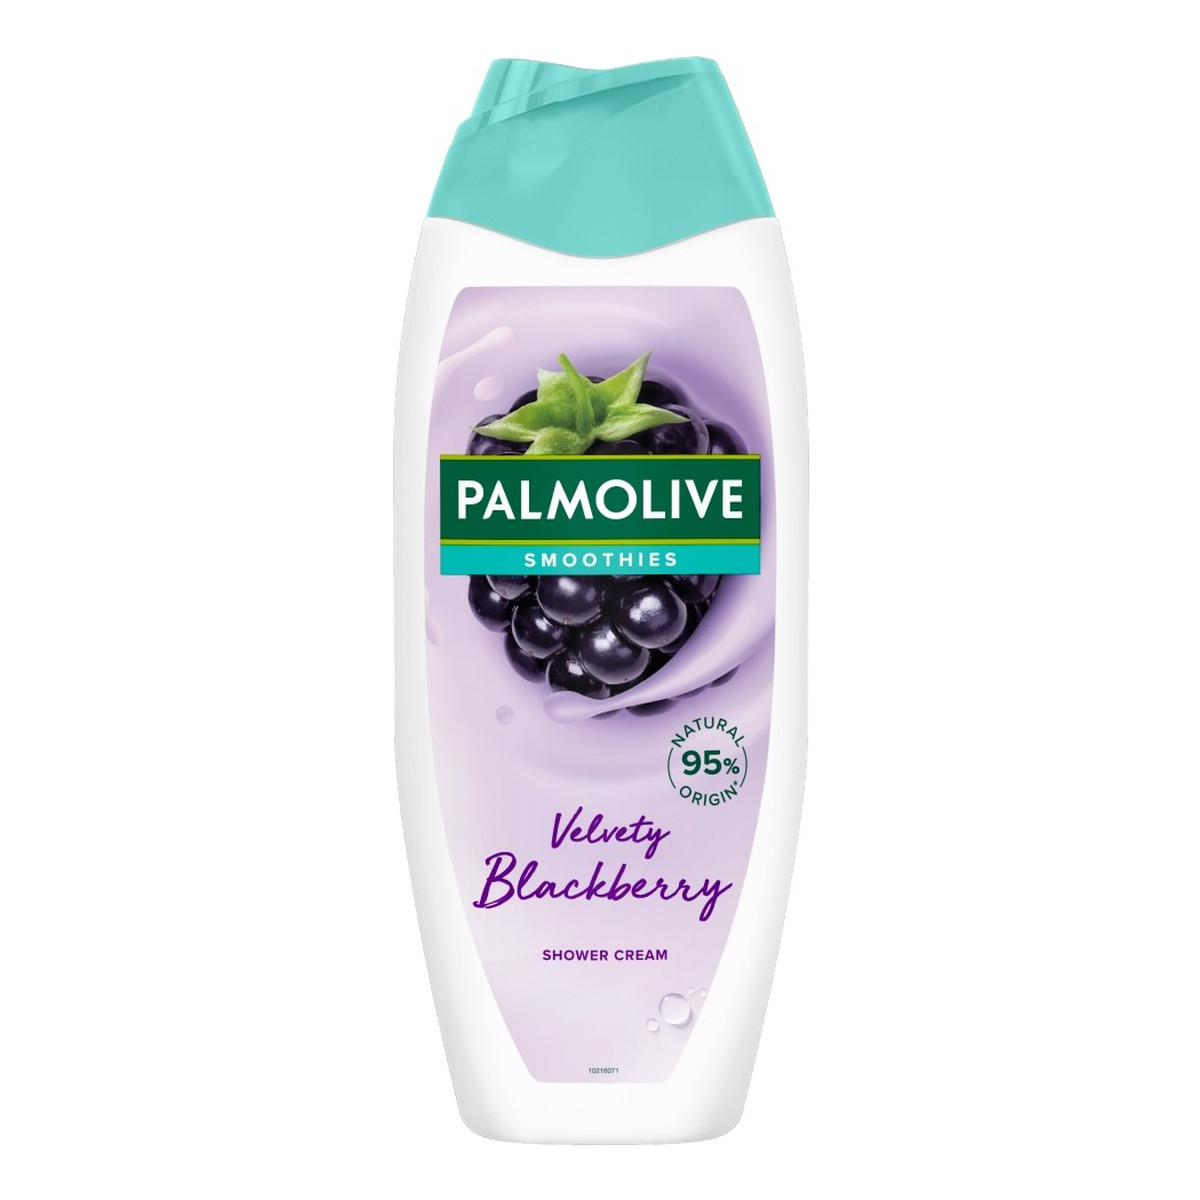 Colgate PALMOLIVE Smoothies Kremowy żel pod prysznic velvety blackberry 500ml